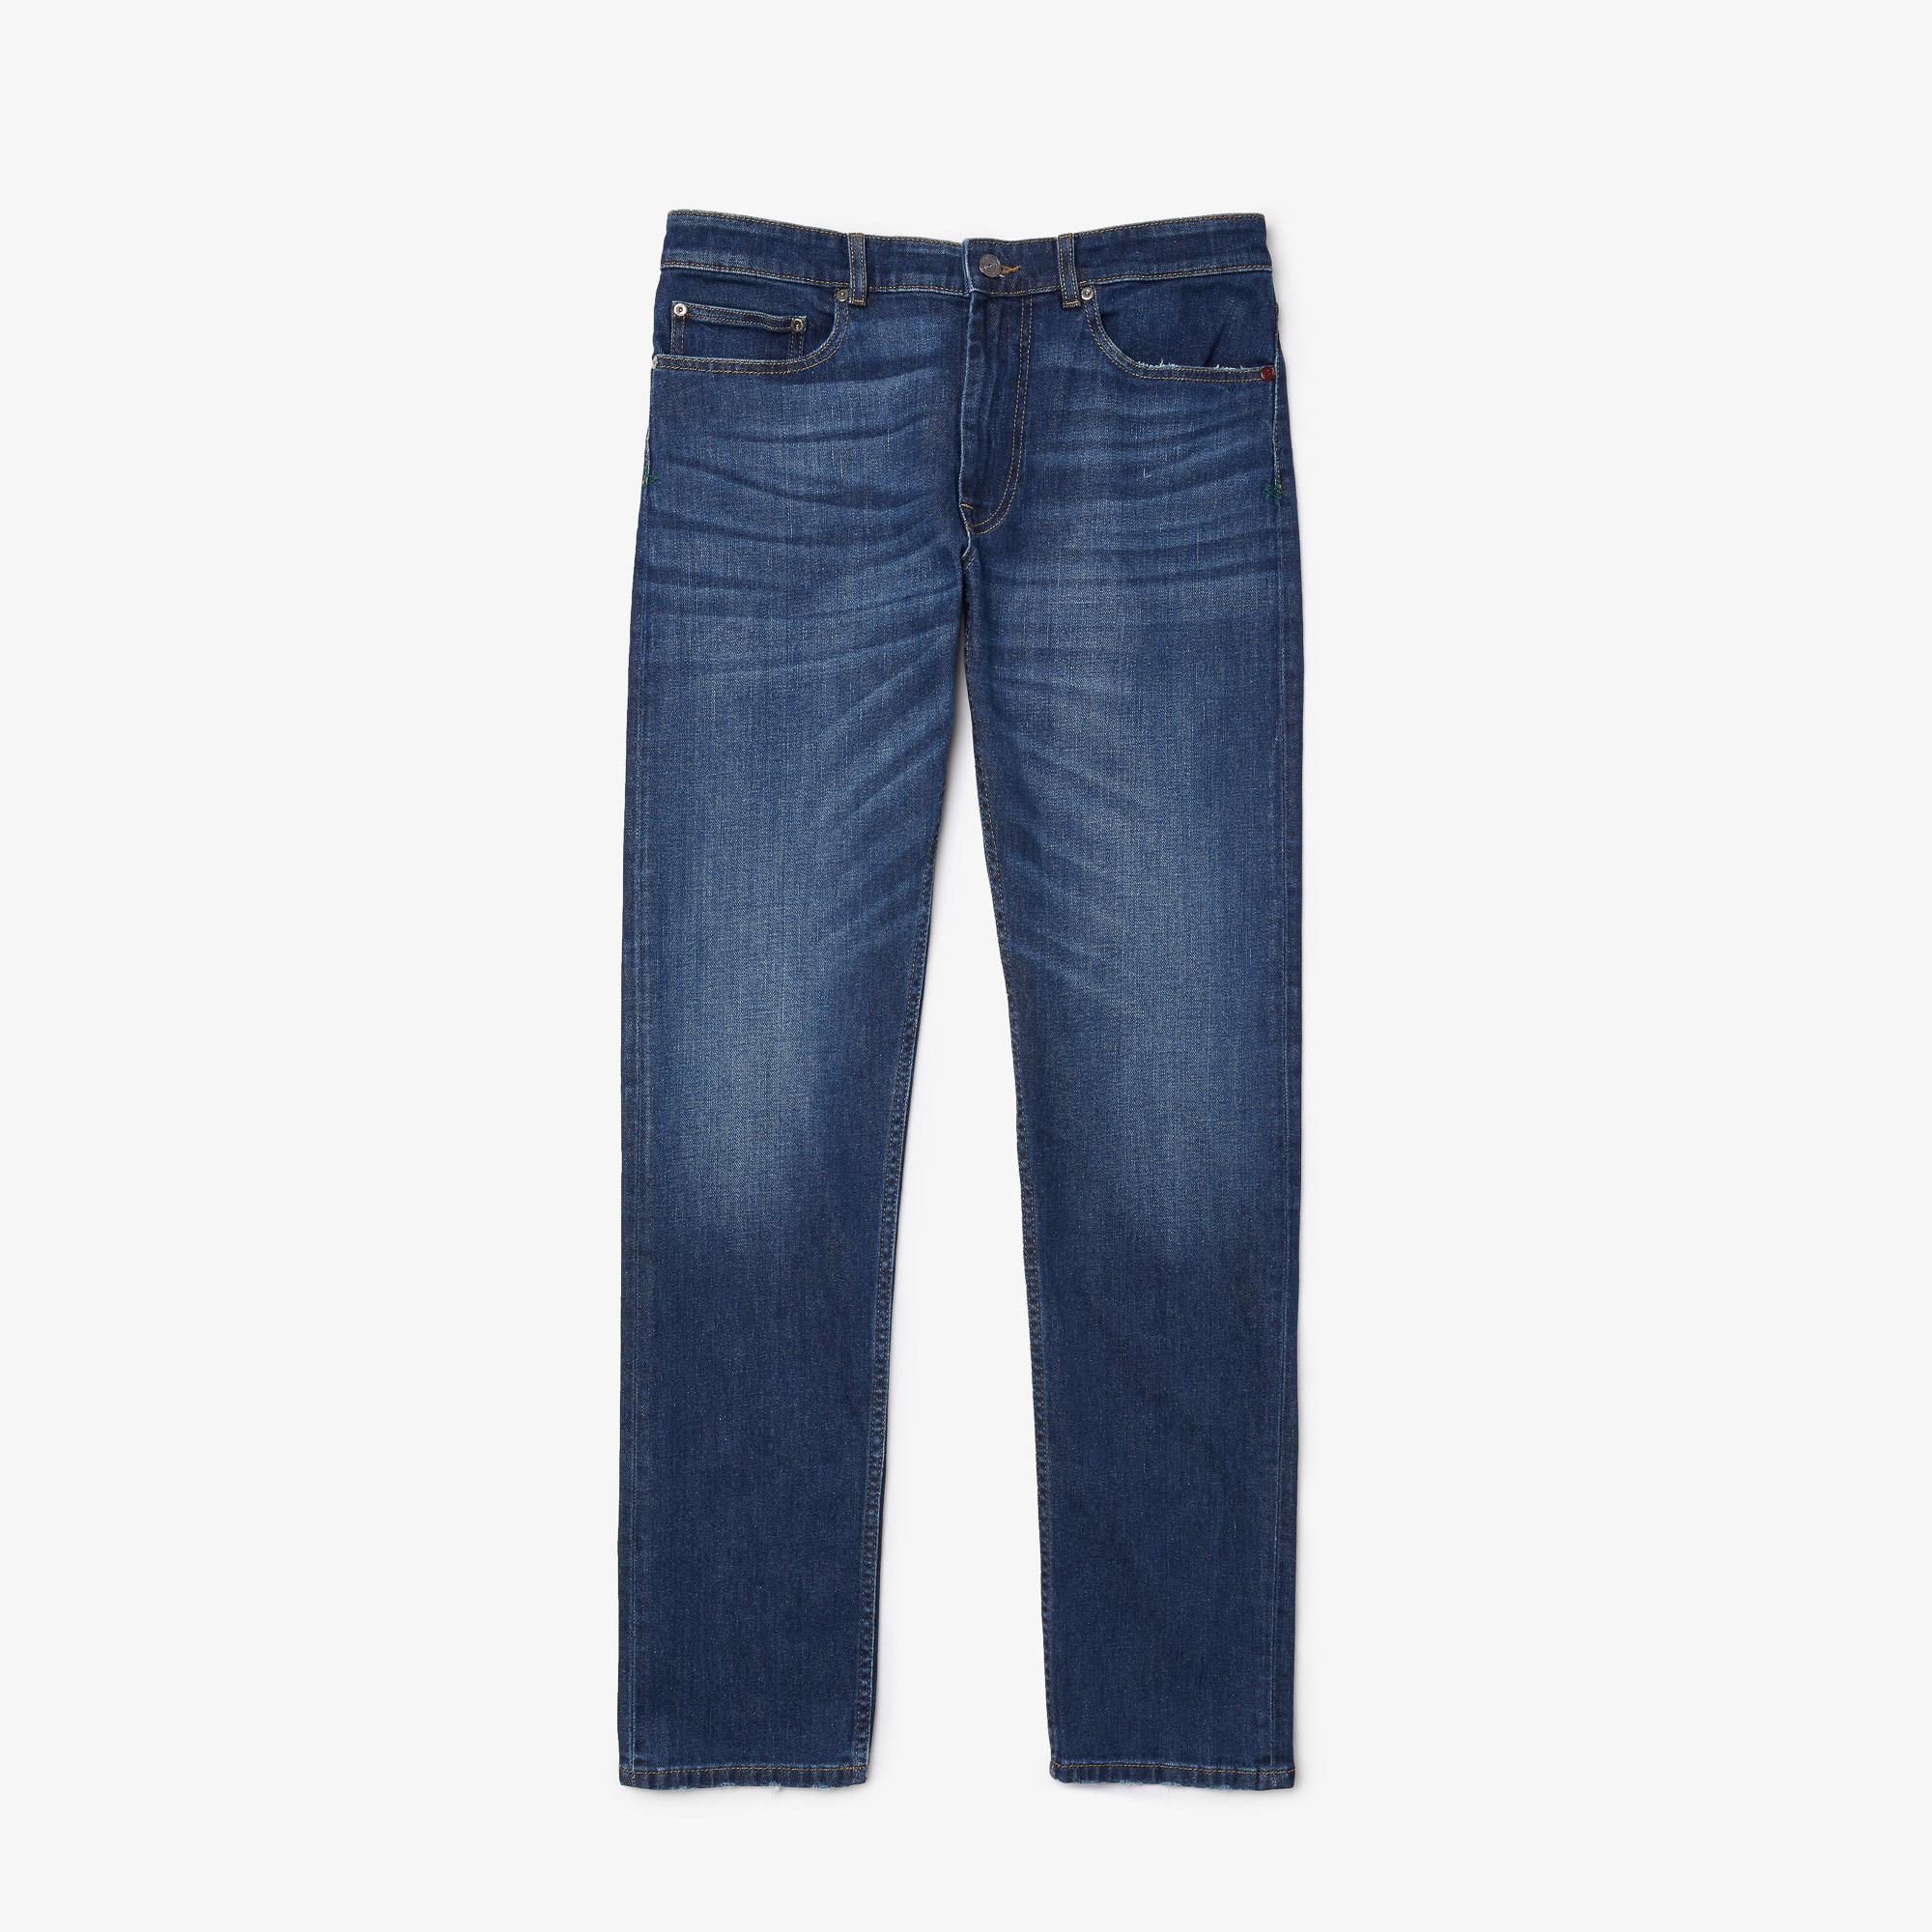 Lacoste Men's Slim Fit Stretch Cotton Denim Jeans HH2704 | Lacoste